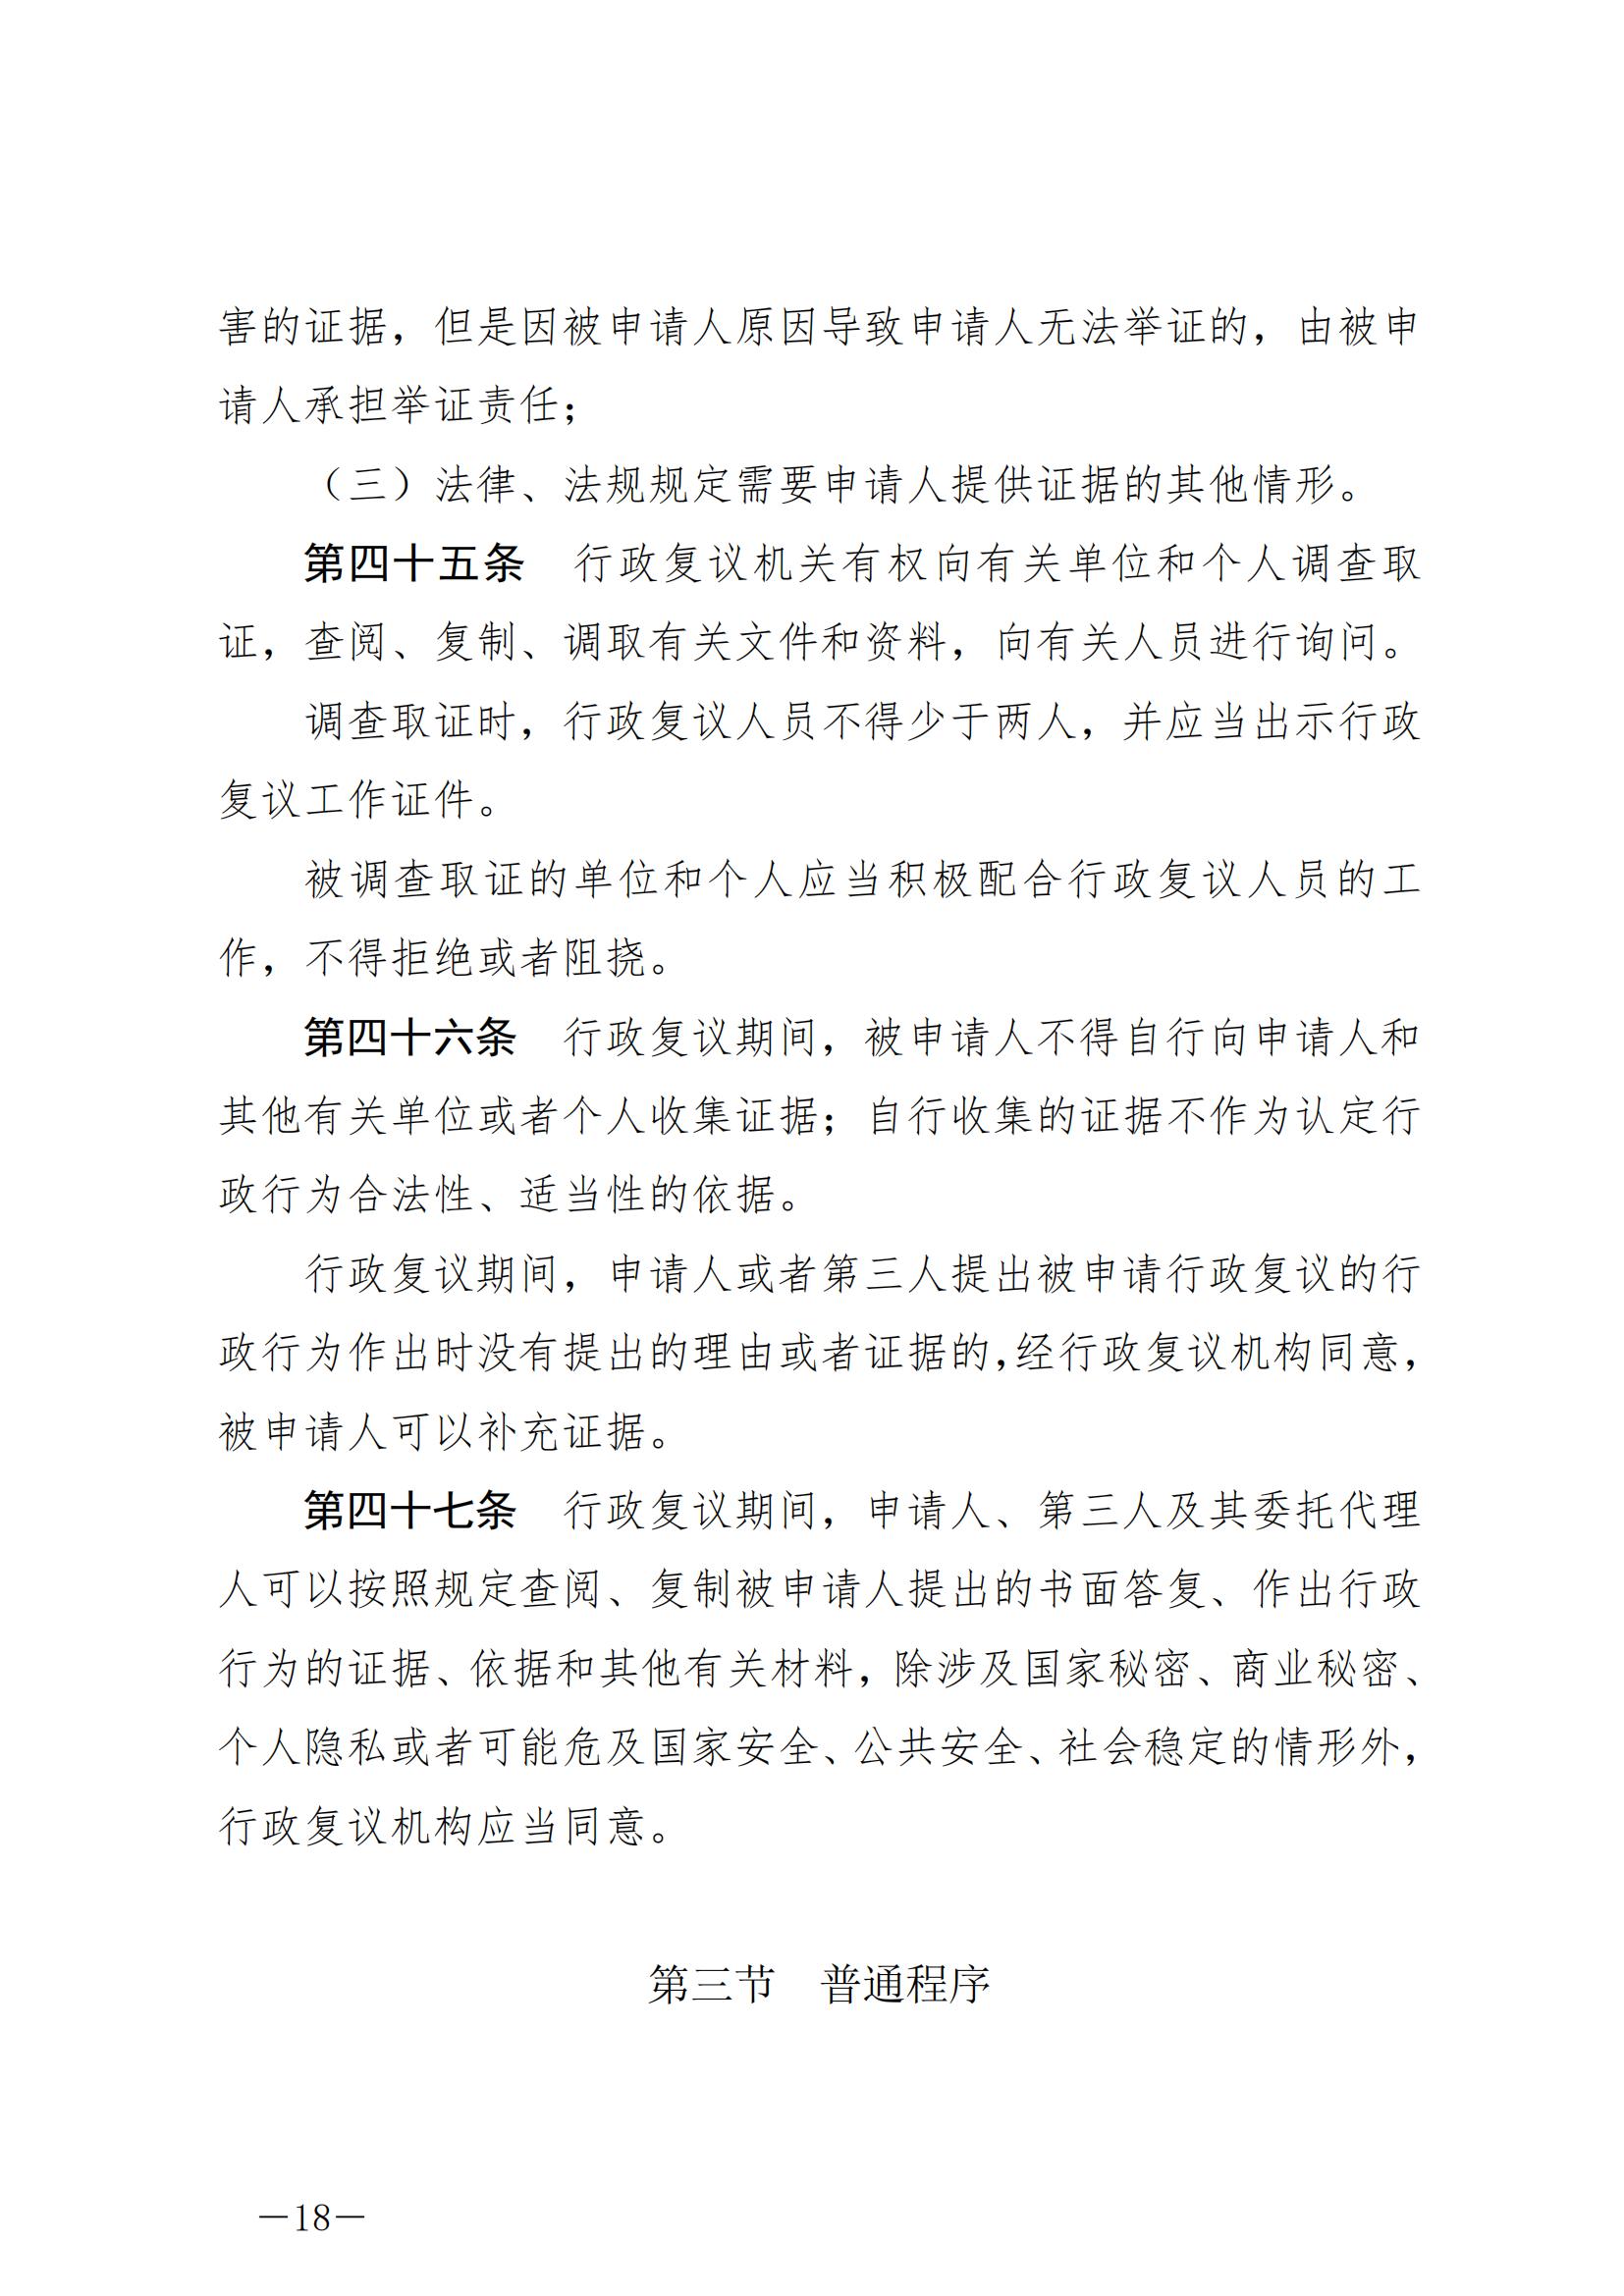 《中华人民共和国行政复议法》_20231204154310_17.jpg